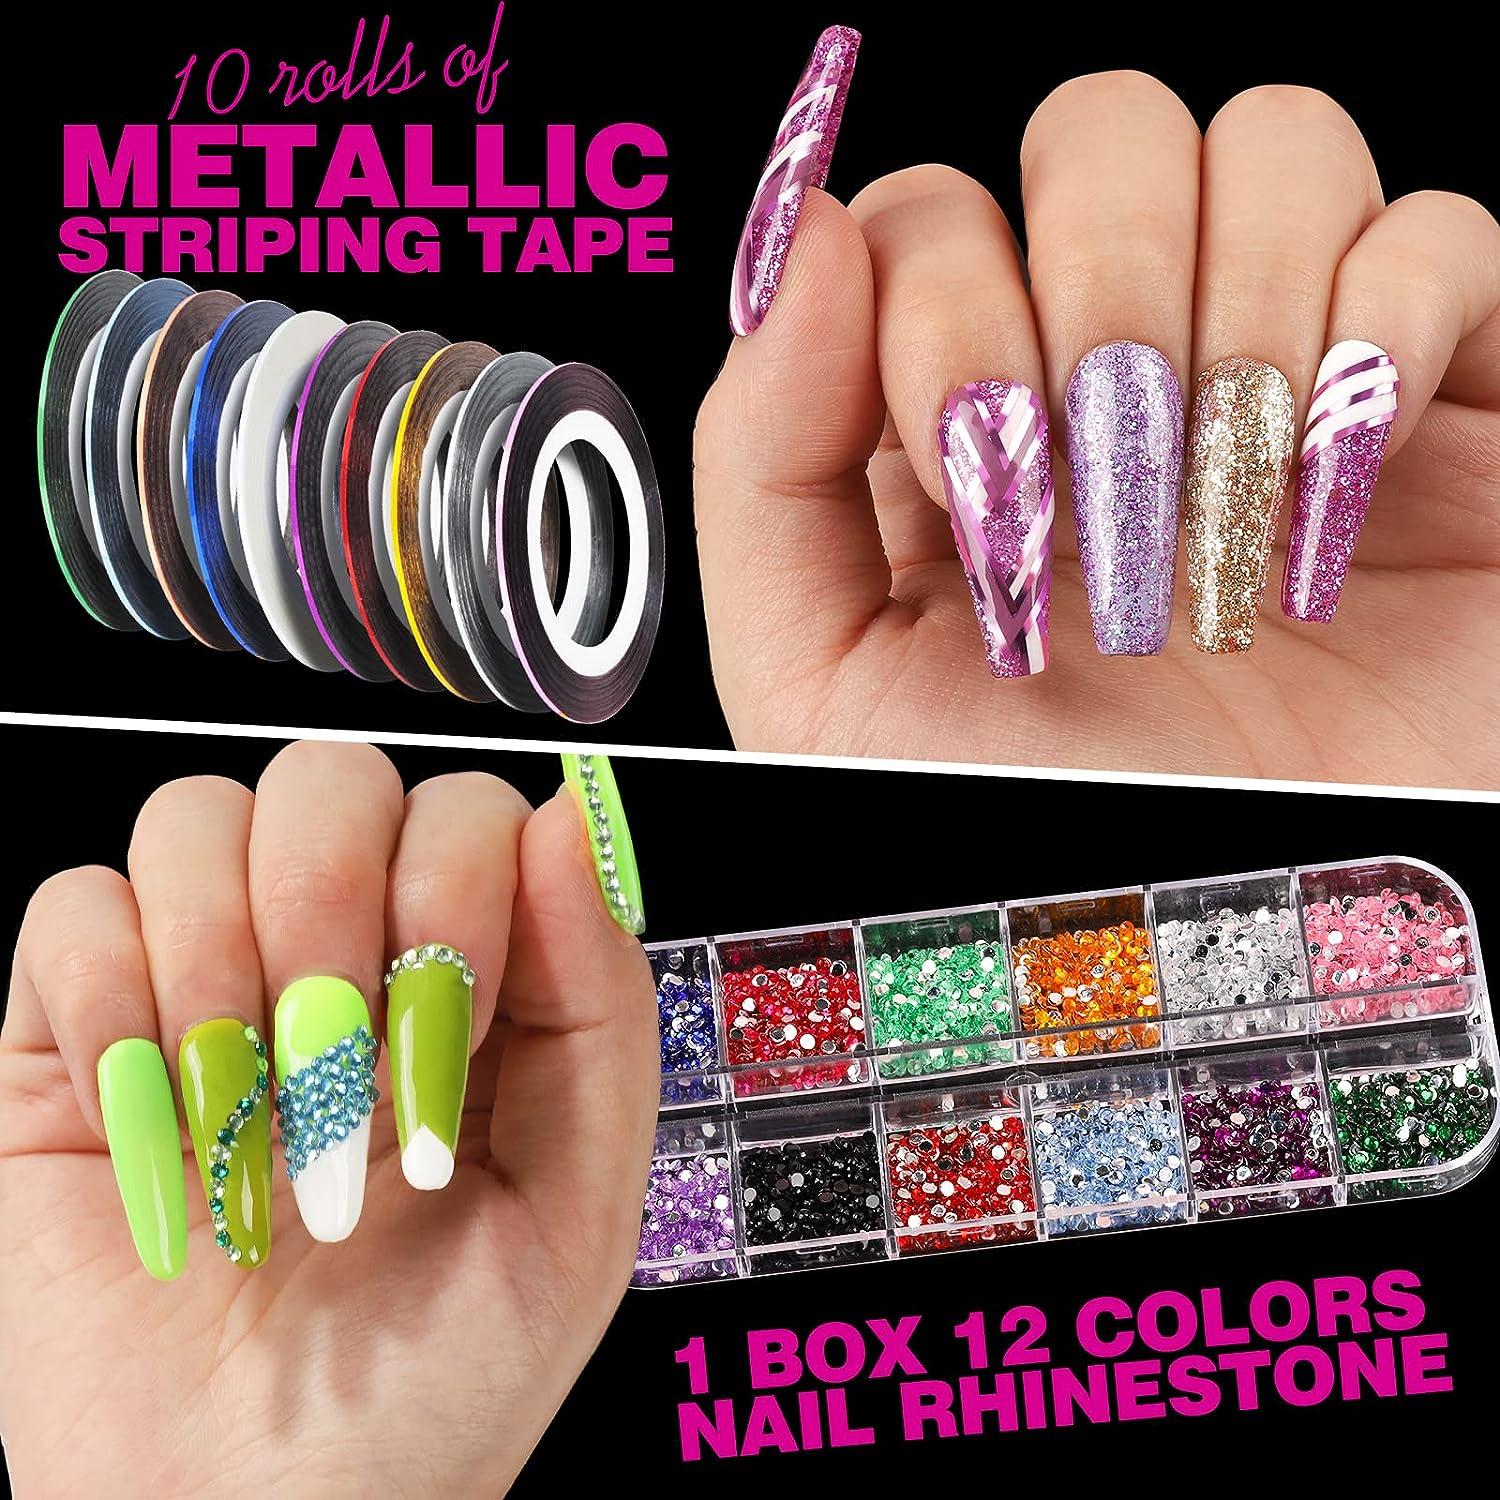 Nail Art Kit for Beginners, Nail Art Supplies With Nail Art Brushes, Nail Dotting  Tools, Nail Art Stickers, Nail Art Rhinestone, Nail Art Striping  Tapes,combination 1 